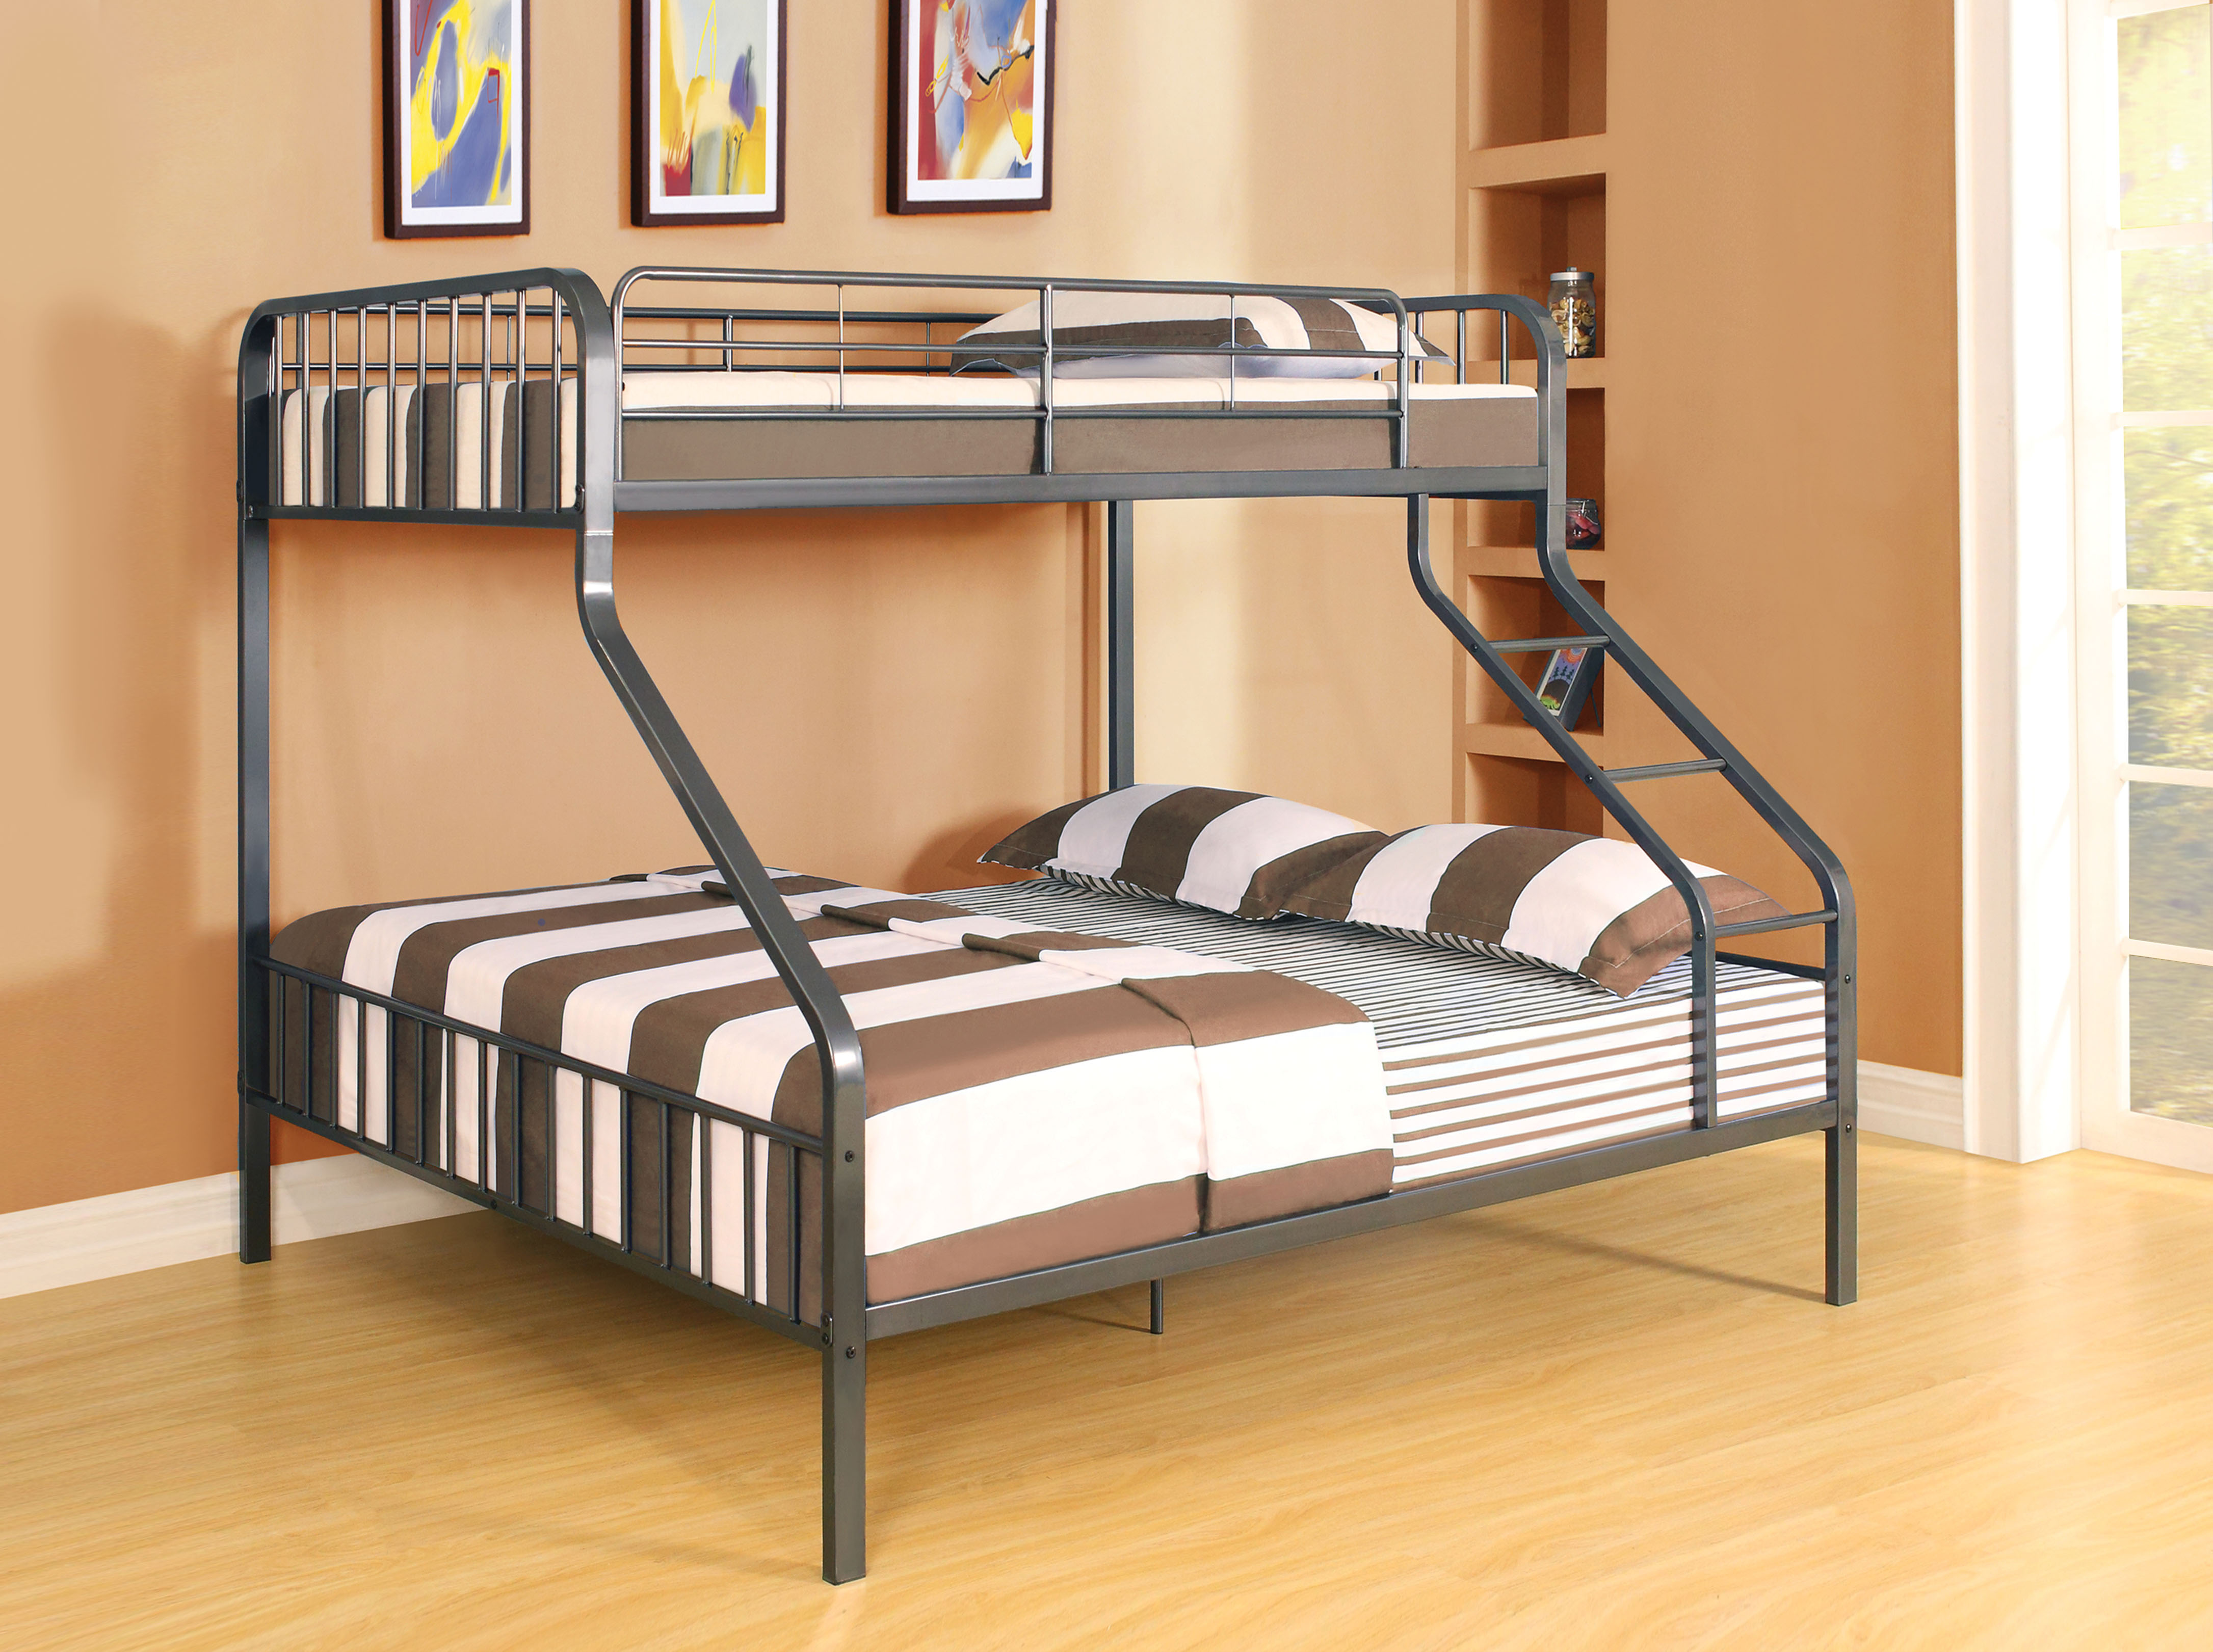 Двухъярусная кровать для взрослых